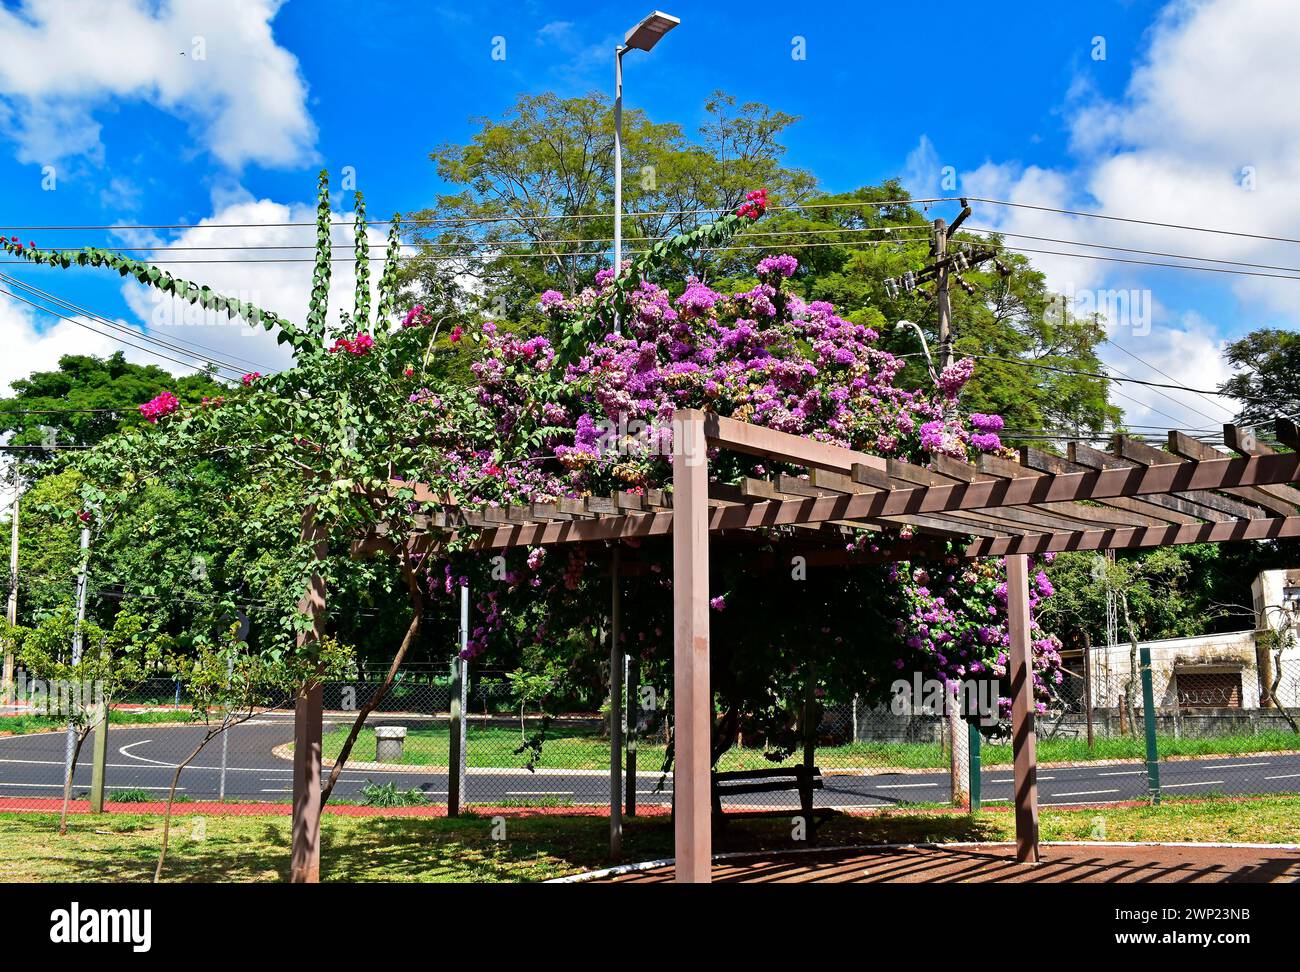 Flowering bougainvillea (Bougainvillea glabra) on pergola in Ribeirao Preto, Sao Paulo, Brazil Stock Photo